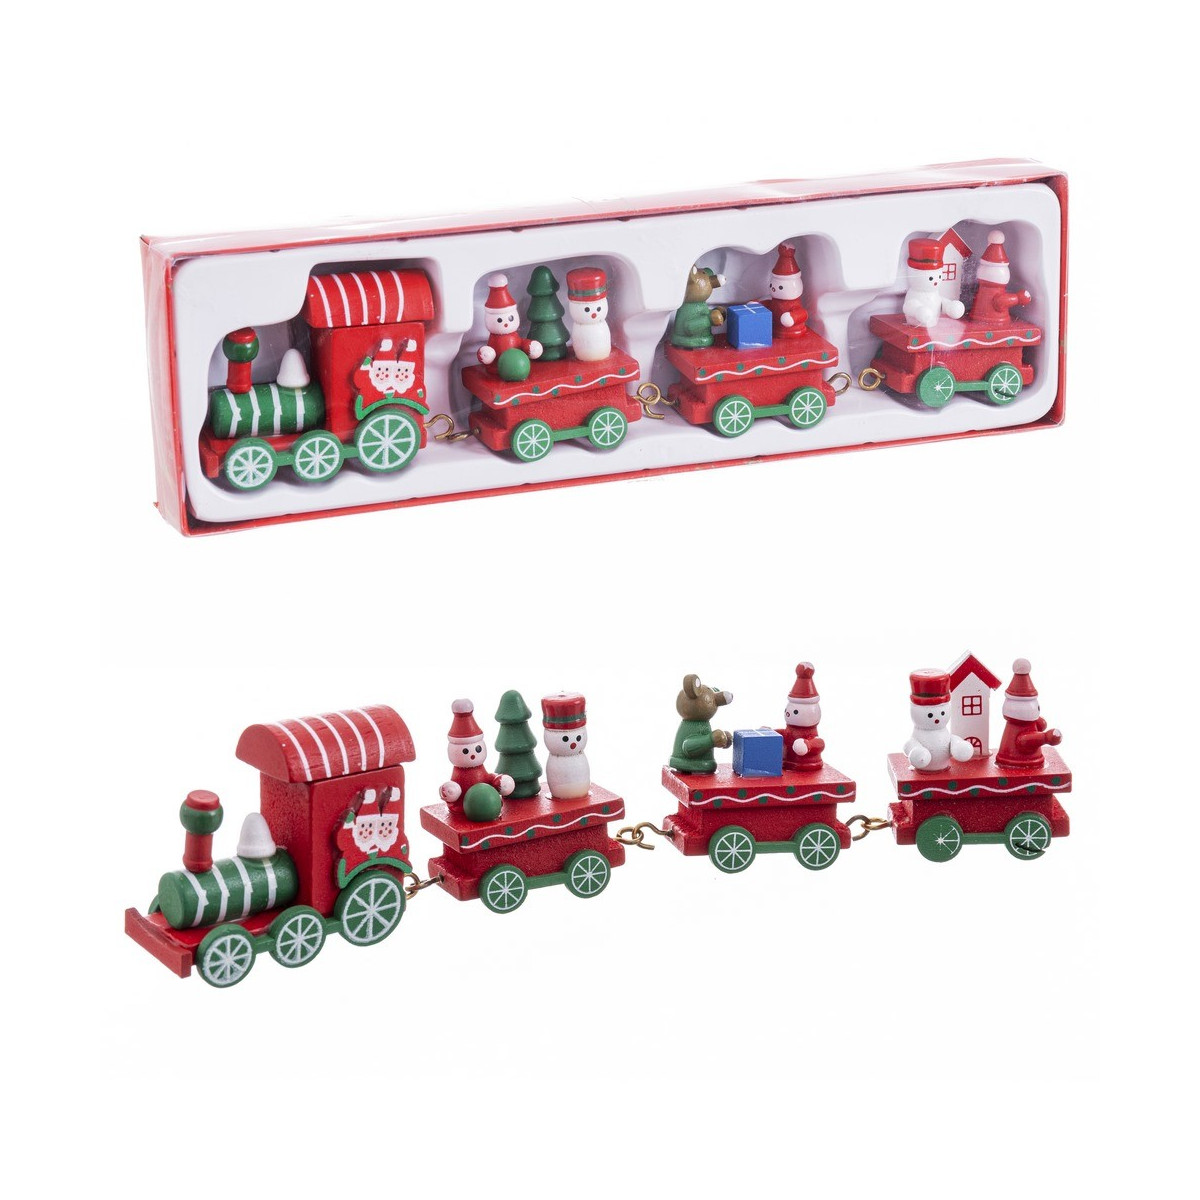 Tren locomotora + 3 vagones madera 25 50 x 7 50 x 3 cm